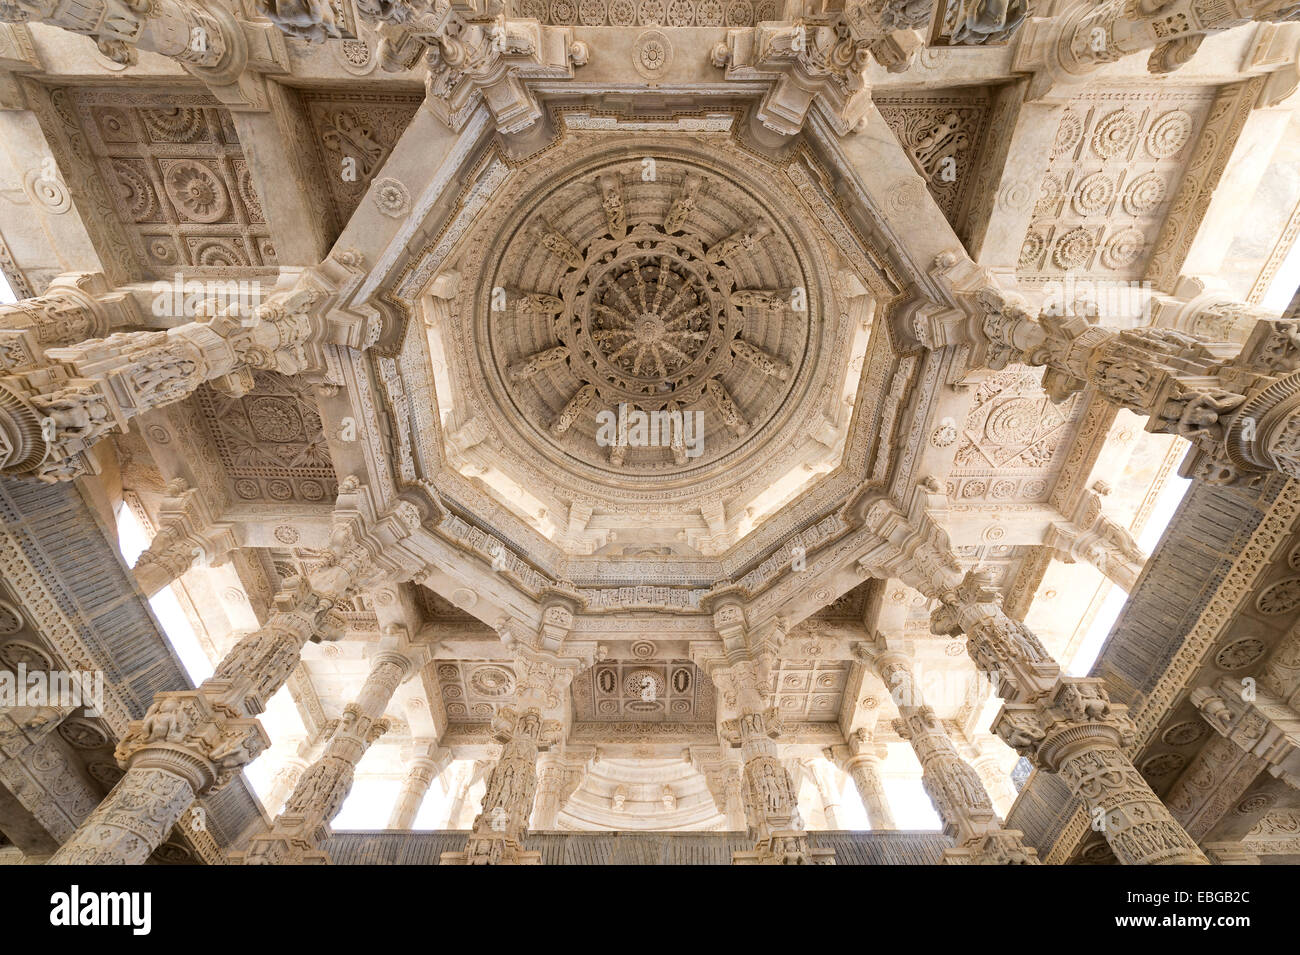 Interieur Saal mit reich verzierten Säulen und decken, Marmortempel, Adinatha-Tempel, Tempel der Jain-Religion, Ranakpur, Rajasthan Stockfoto